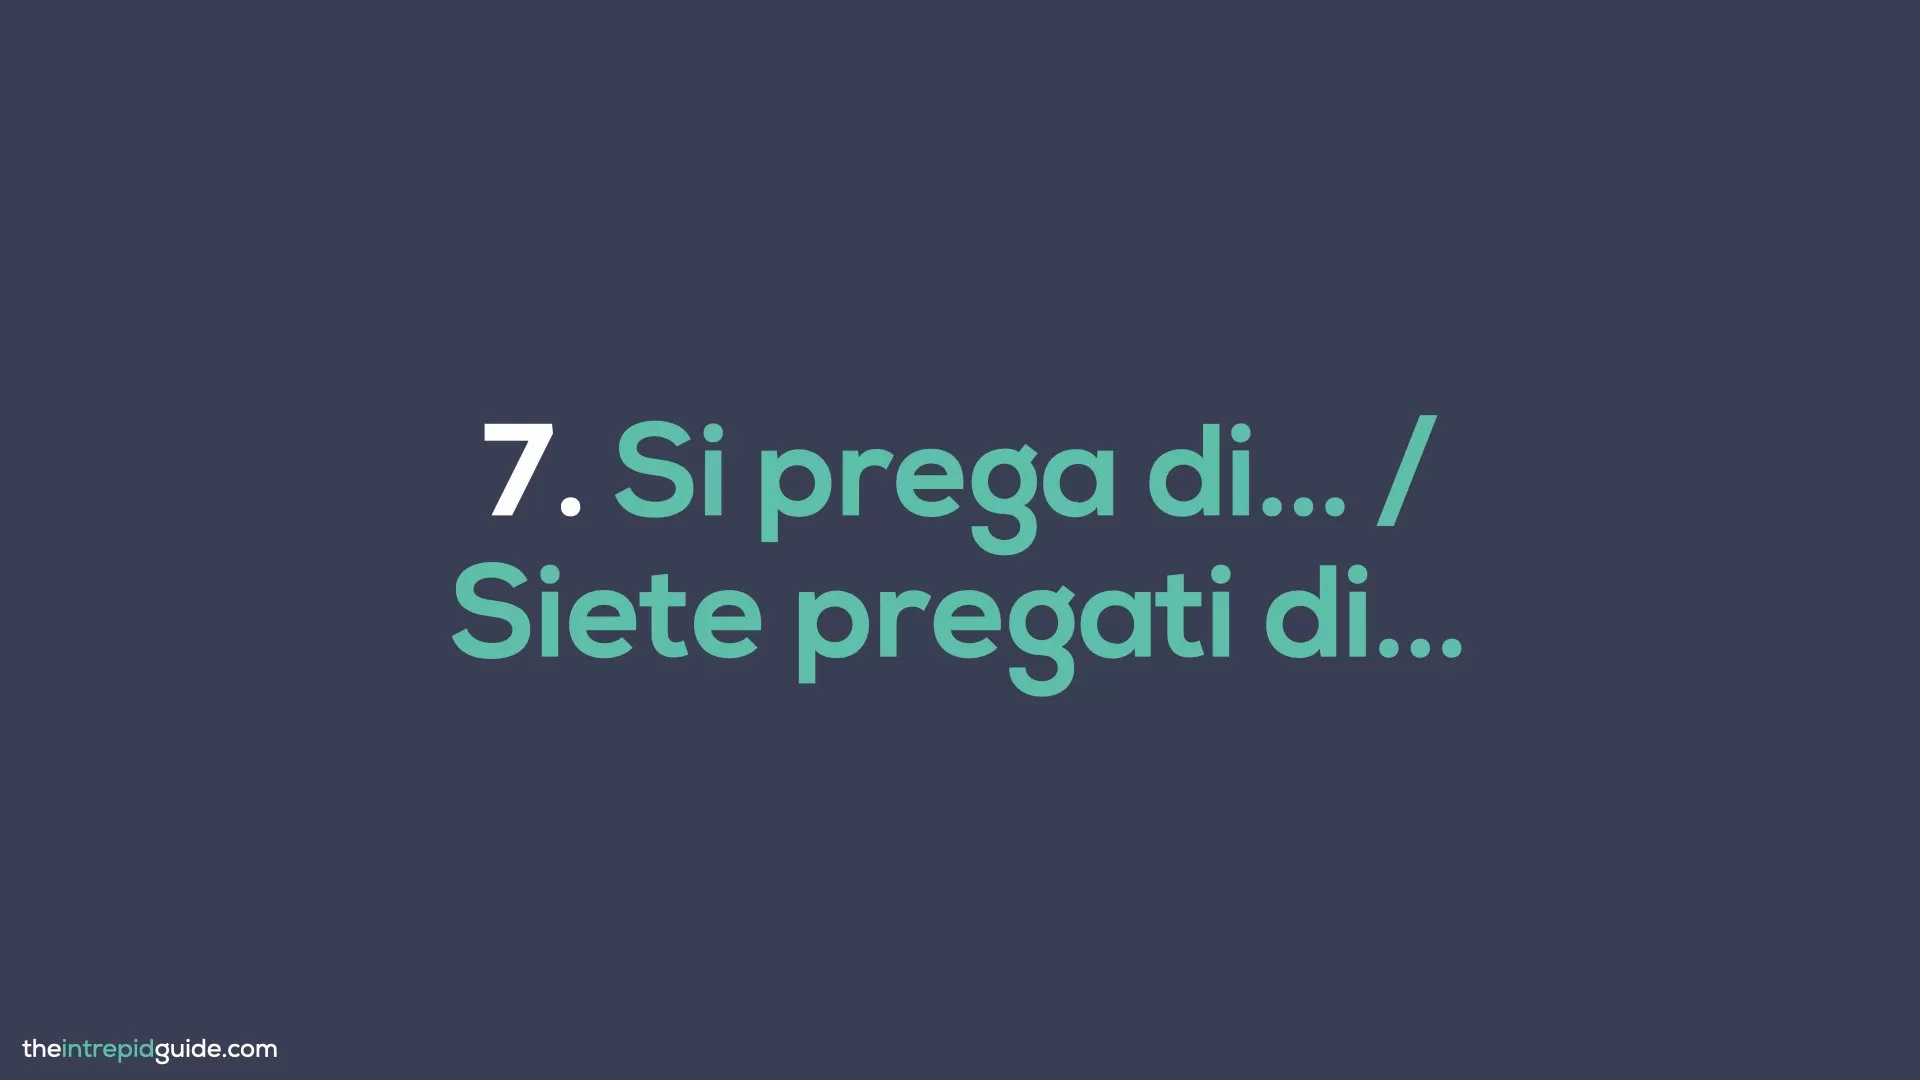 How to say Please in Italian - Si pregi di, Siete pregati di